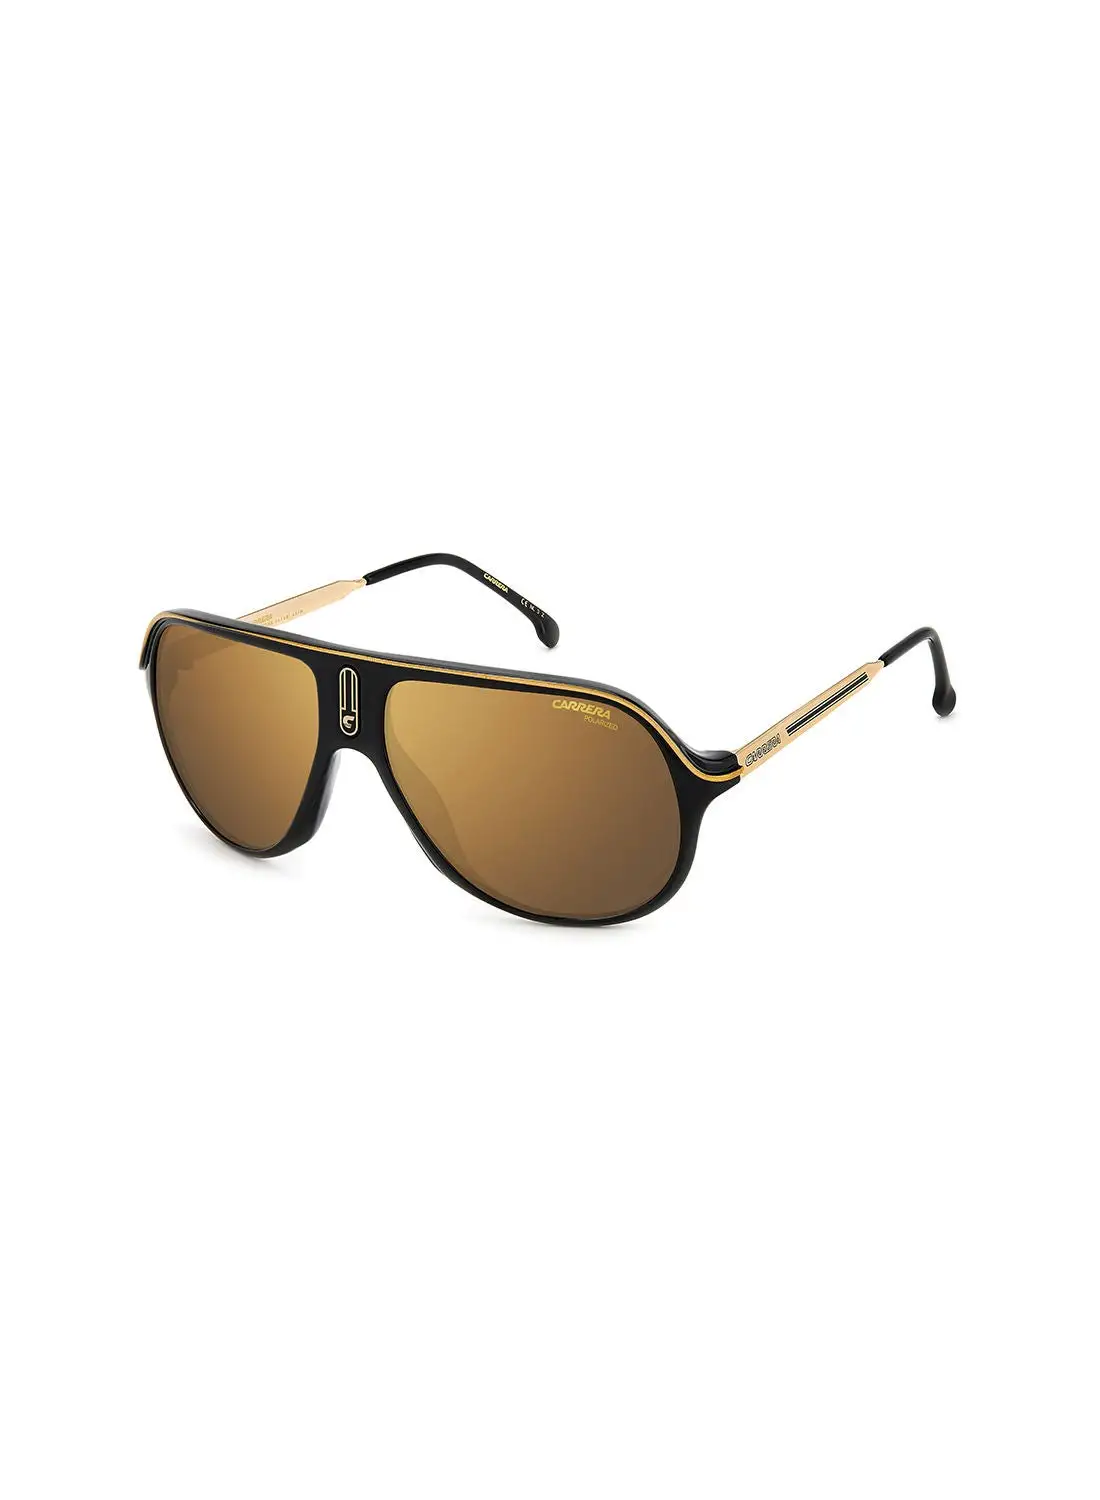 نظارة شمسية نافيجيتور للحماية من الأشعة فوق البنفسجية للجنسين من كاريرا - Safari65/N Blk Gold 62 - مقاس العدسة: 62 ملم